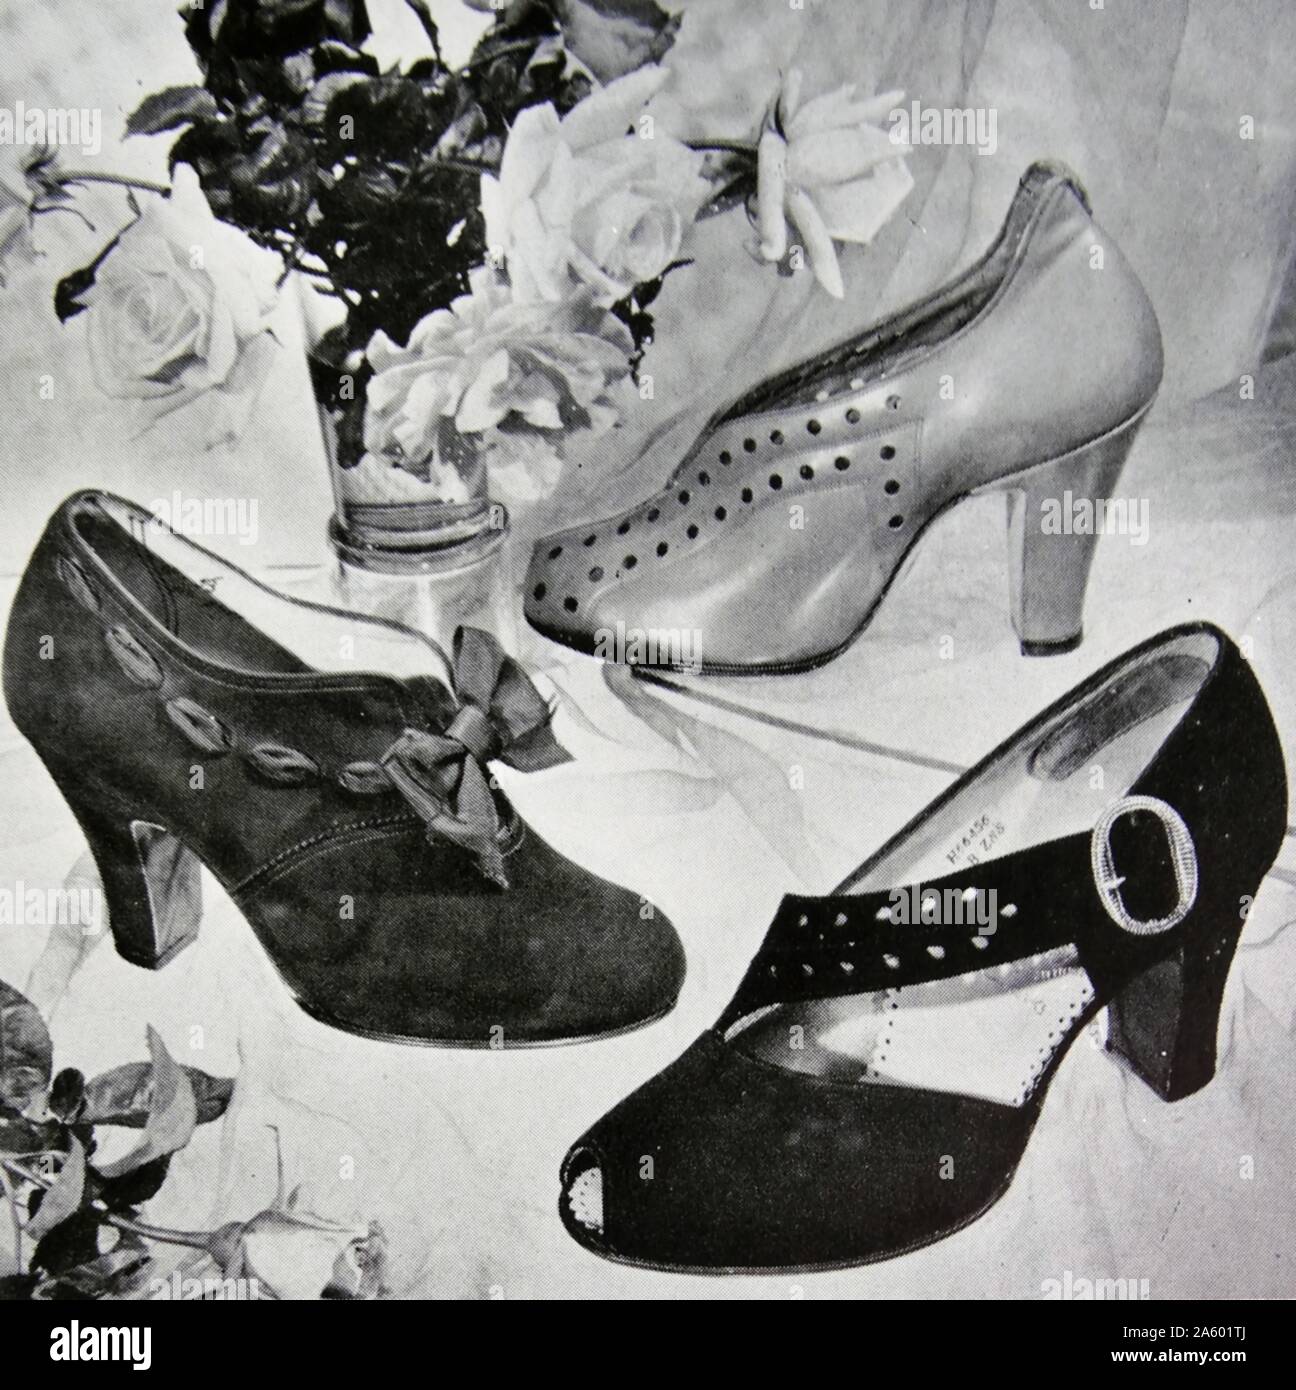 compañero Elástico gemelo Anuncio de nuevos zapatos elegantes por Rayne, un fabricante británico  conocido por high-end de alta costura y zapatos. Fundada en 1899 como un  costumier teatral, se diversificaron en zapatos de moda en